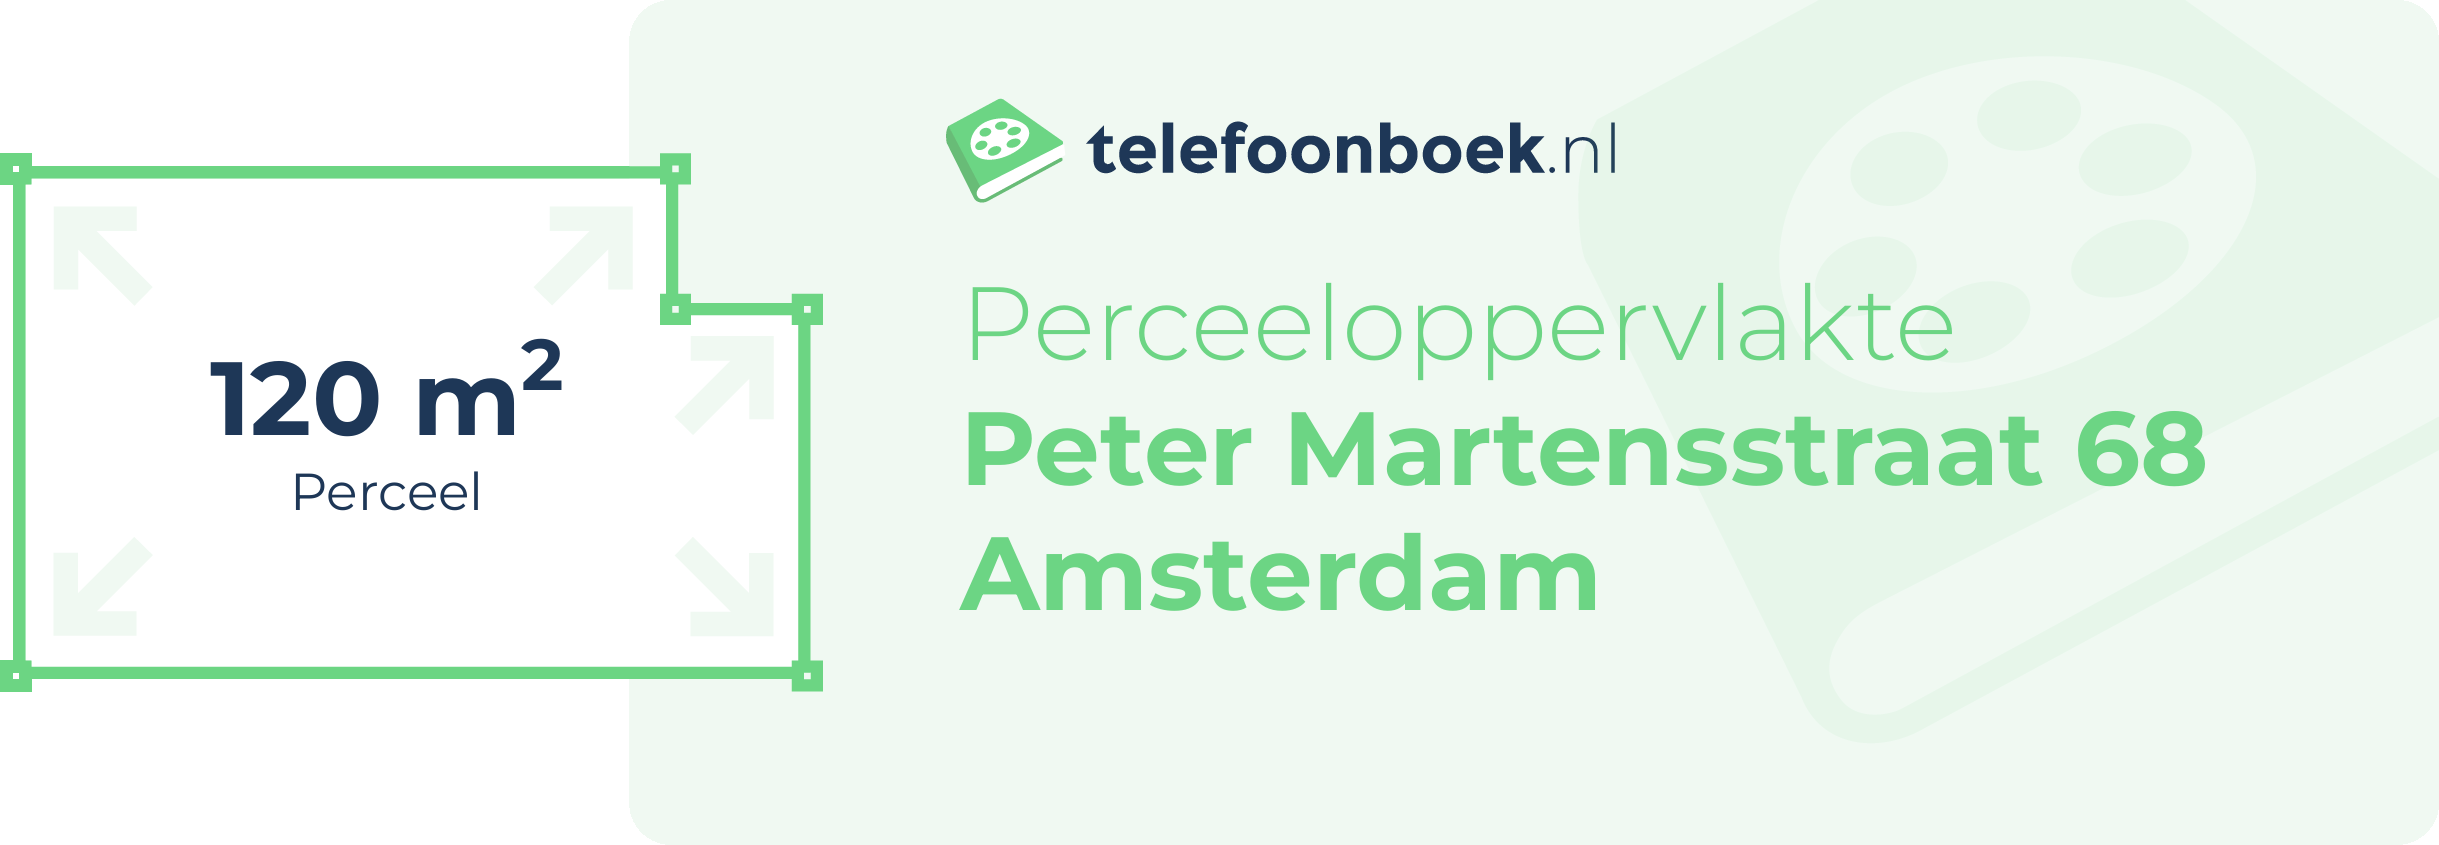 Perceeloppervlakte Peter Martensstraat 68 Amsterdam